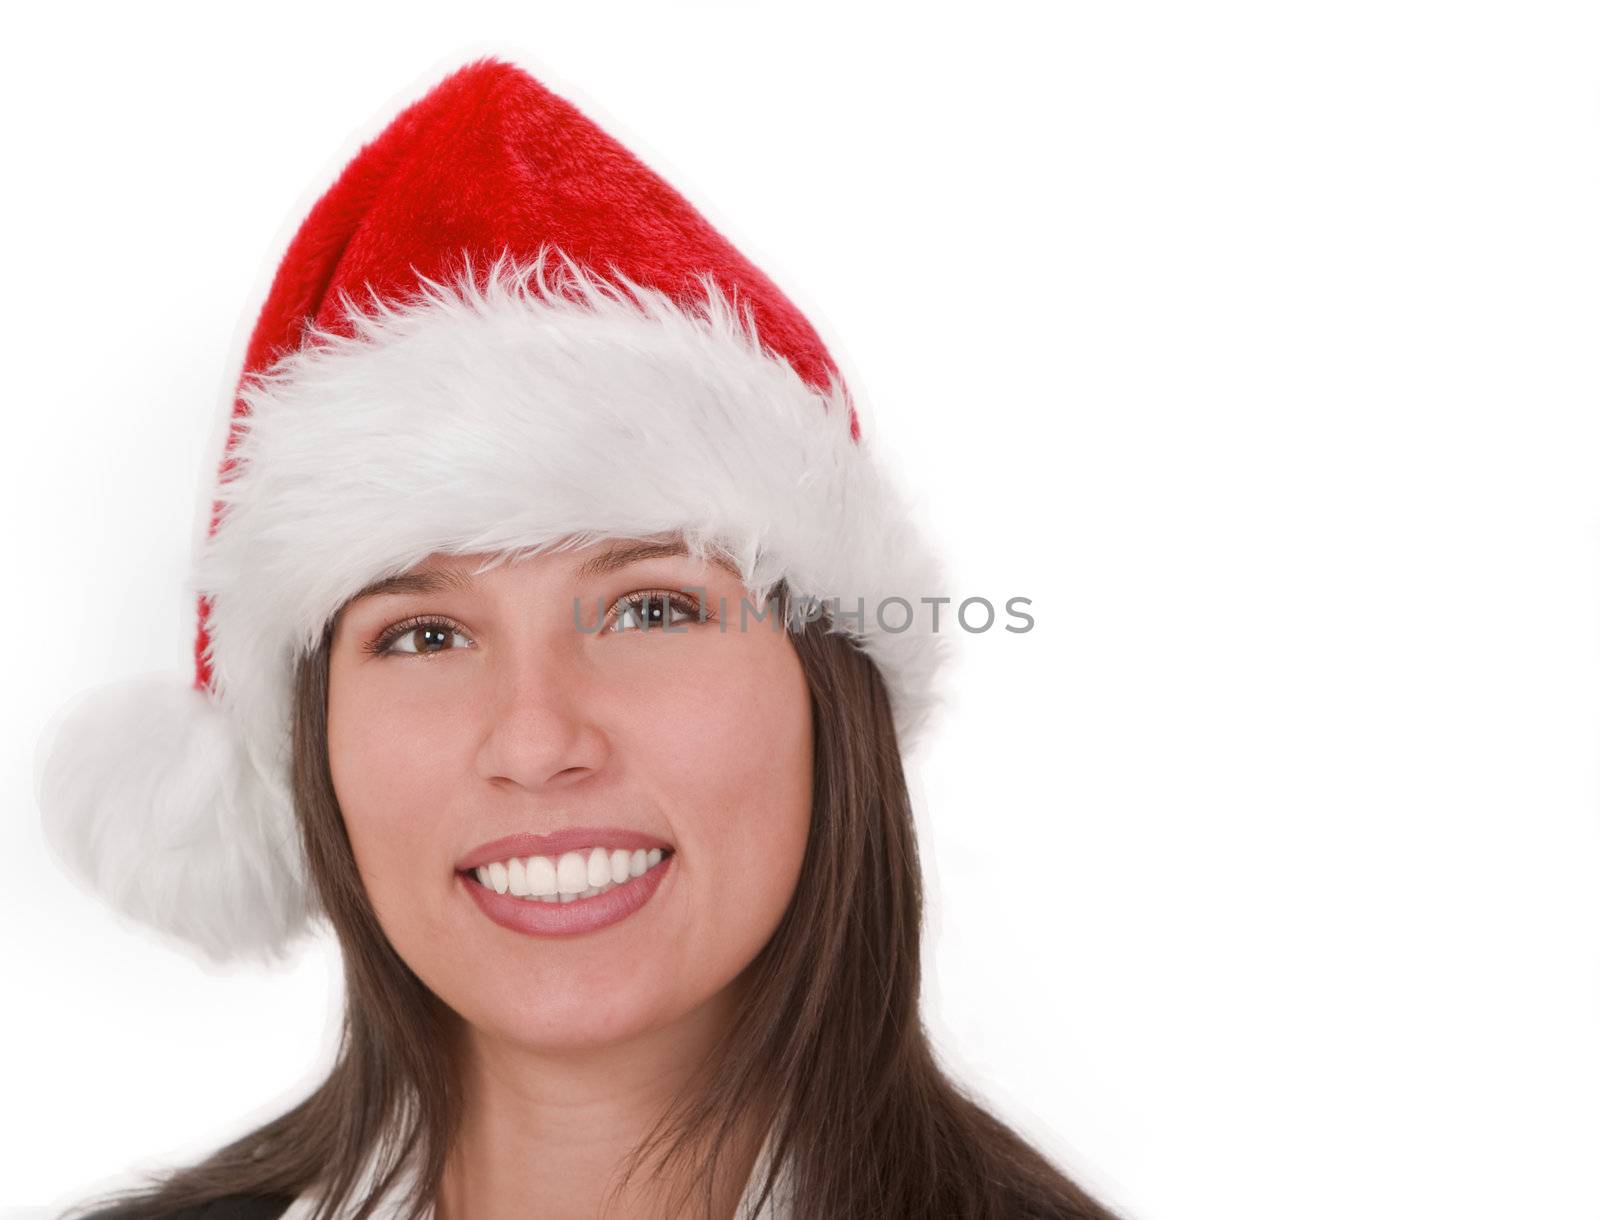 Girl in Santa's hat by RazvanPhotography